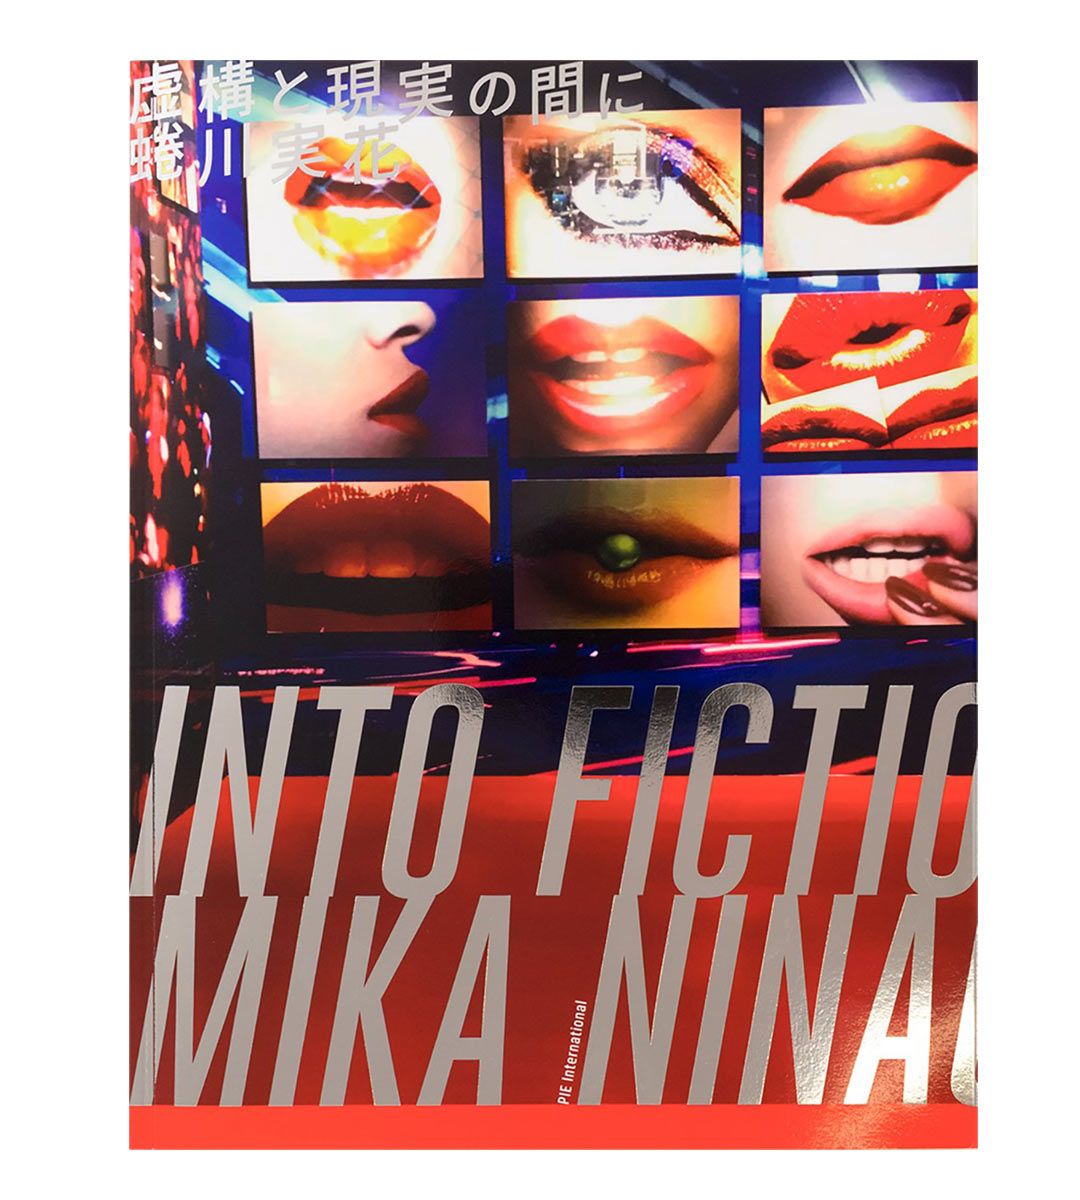 Mika Ninagawa: en ficción/realidad